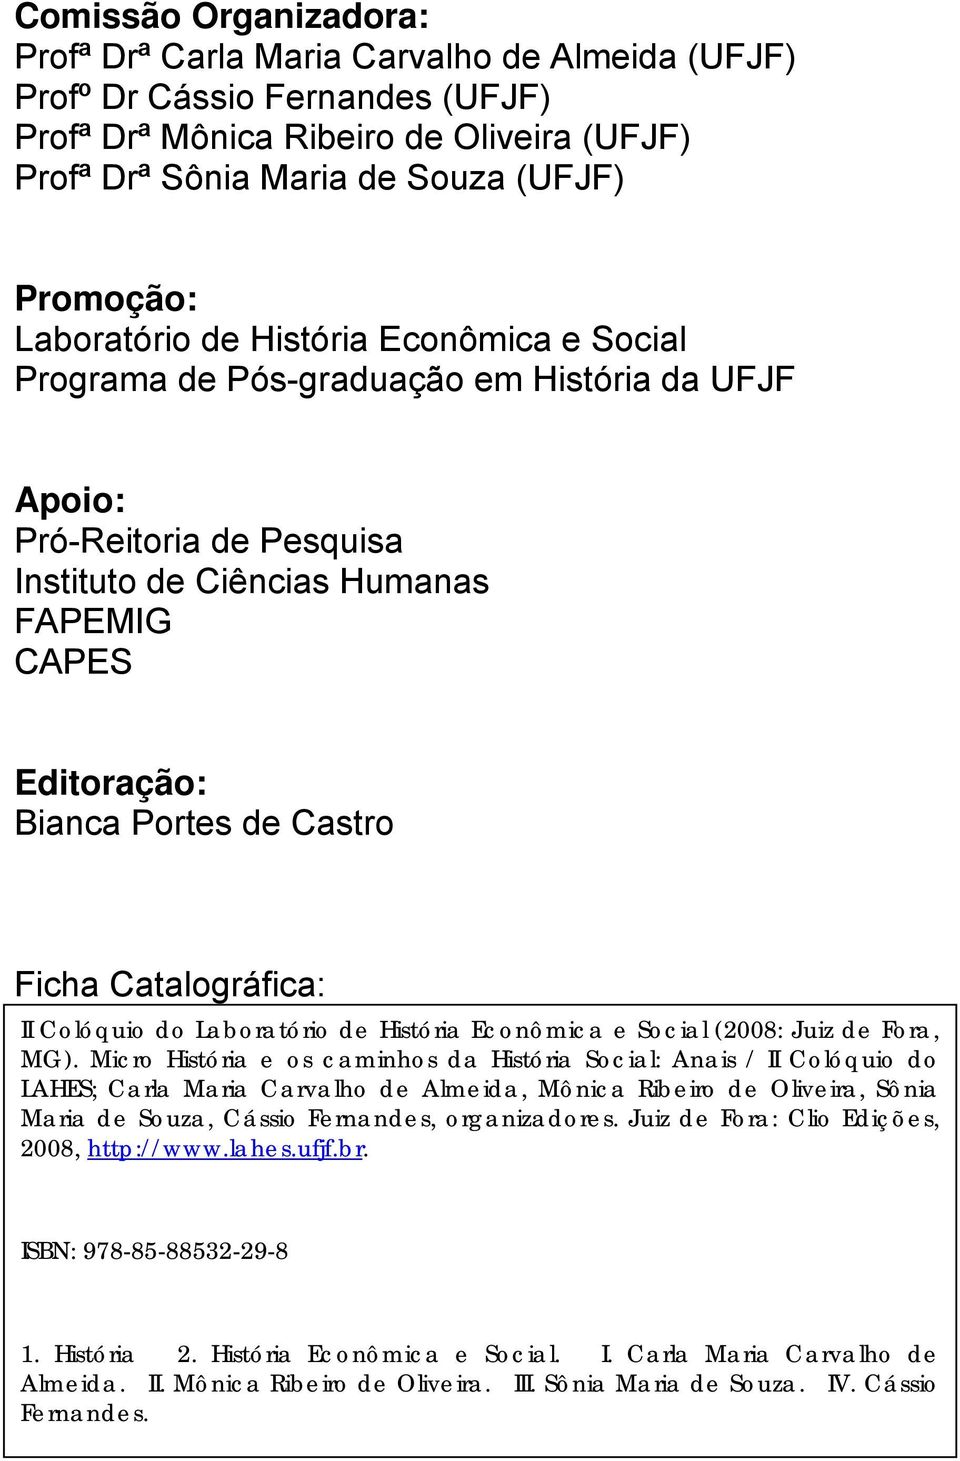 Castro Ficha Catalográfica: II Colóquio do Laboratório de História Econômica e Social (2008: Juiz de Fora, MG).